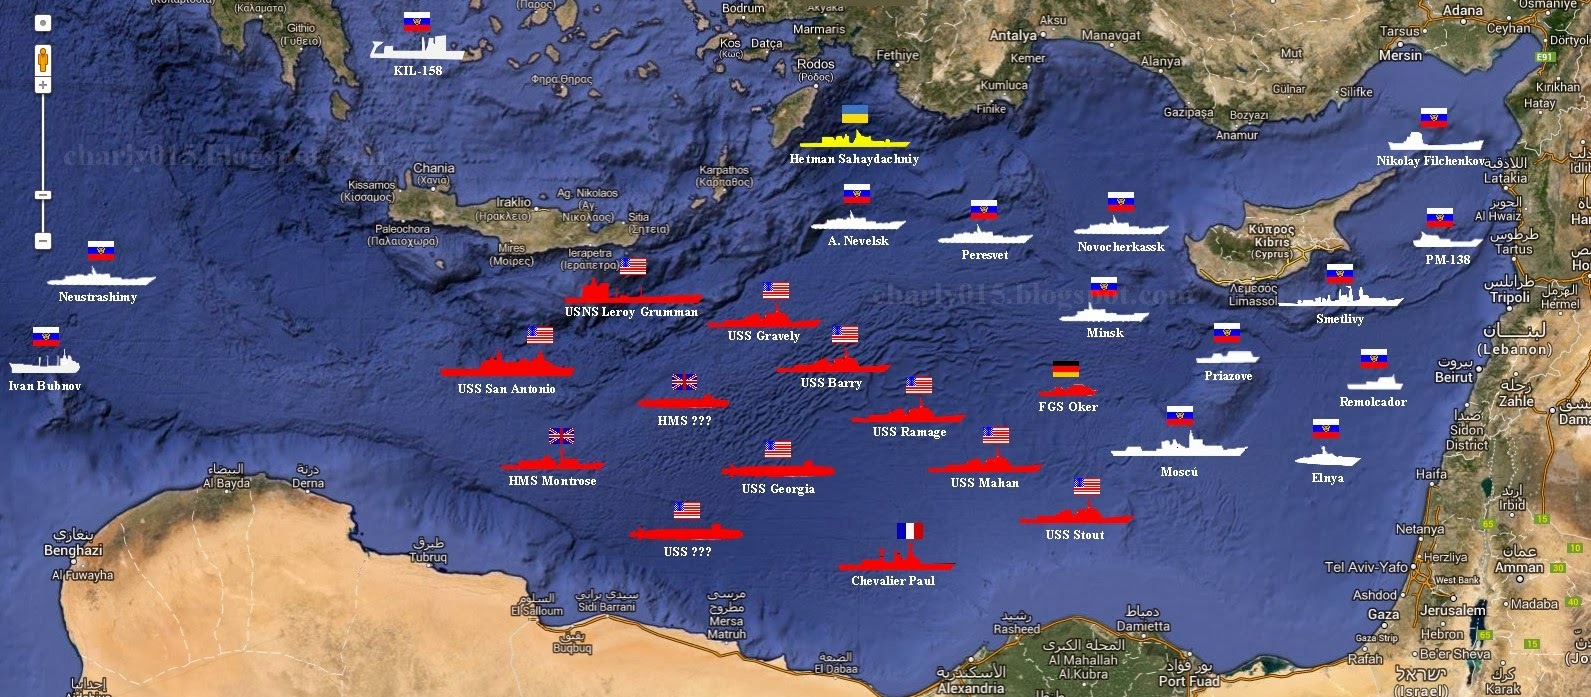 ΕΚΤΑΚΤΟ: Ρωσικά πυραυλοφόρα πλοία, υποβρύχια και στρατηγικά βομβαρδιστικά παίρνουν θέσεις μάχης για Συρία